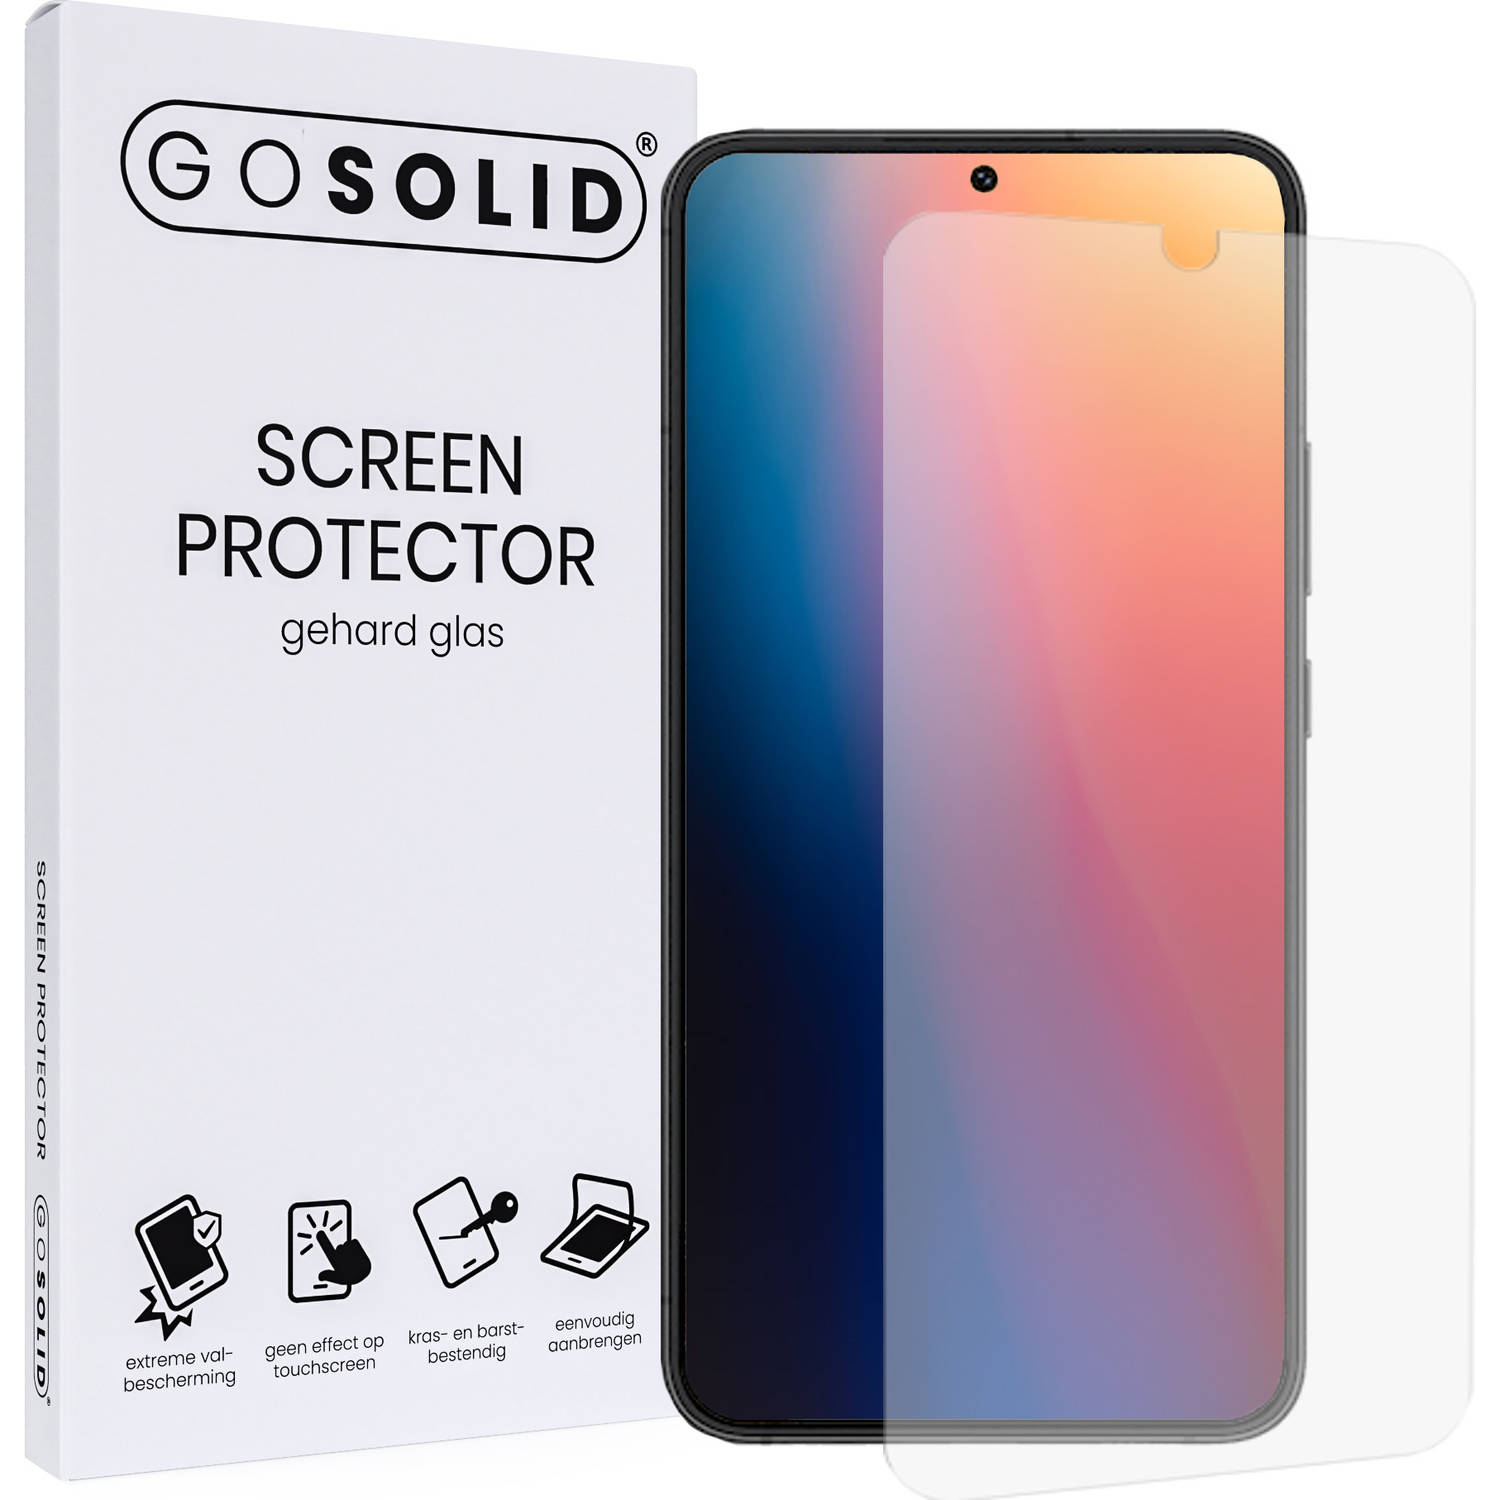 GO SOLID! ® Xiaomi Poco X3 screenprotector gehard glas